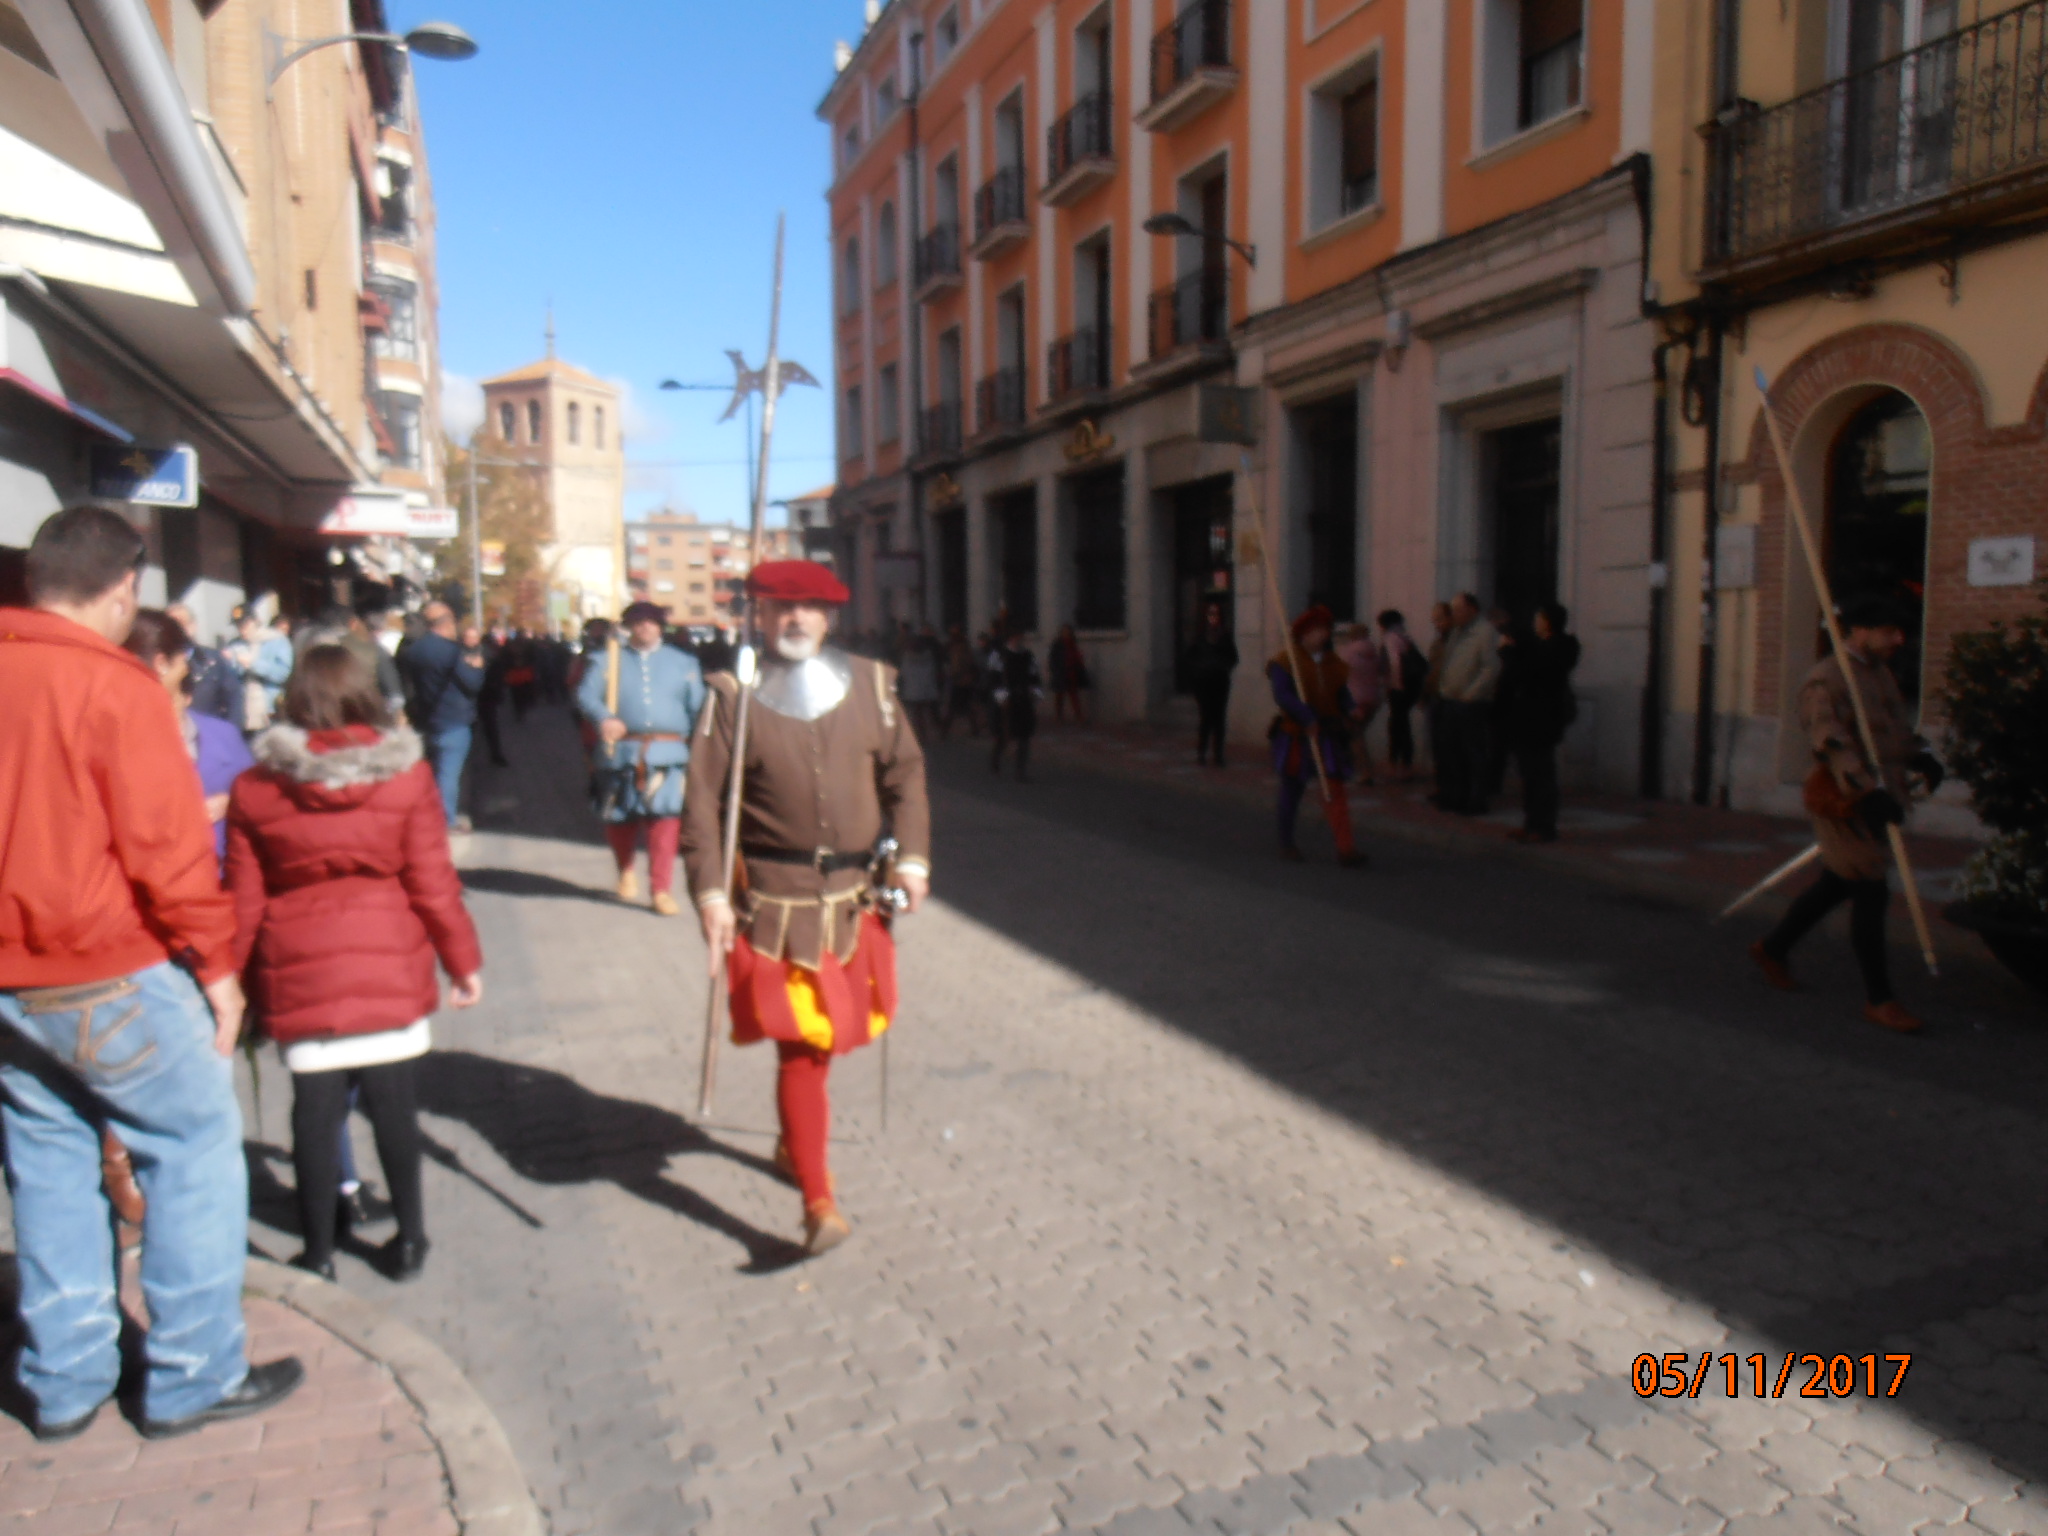 Carlos V llega el domingo. Medina del Campo recreará la visita del ilustre emperador a la villa en 1556